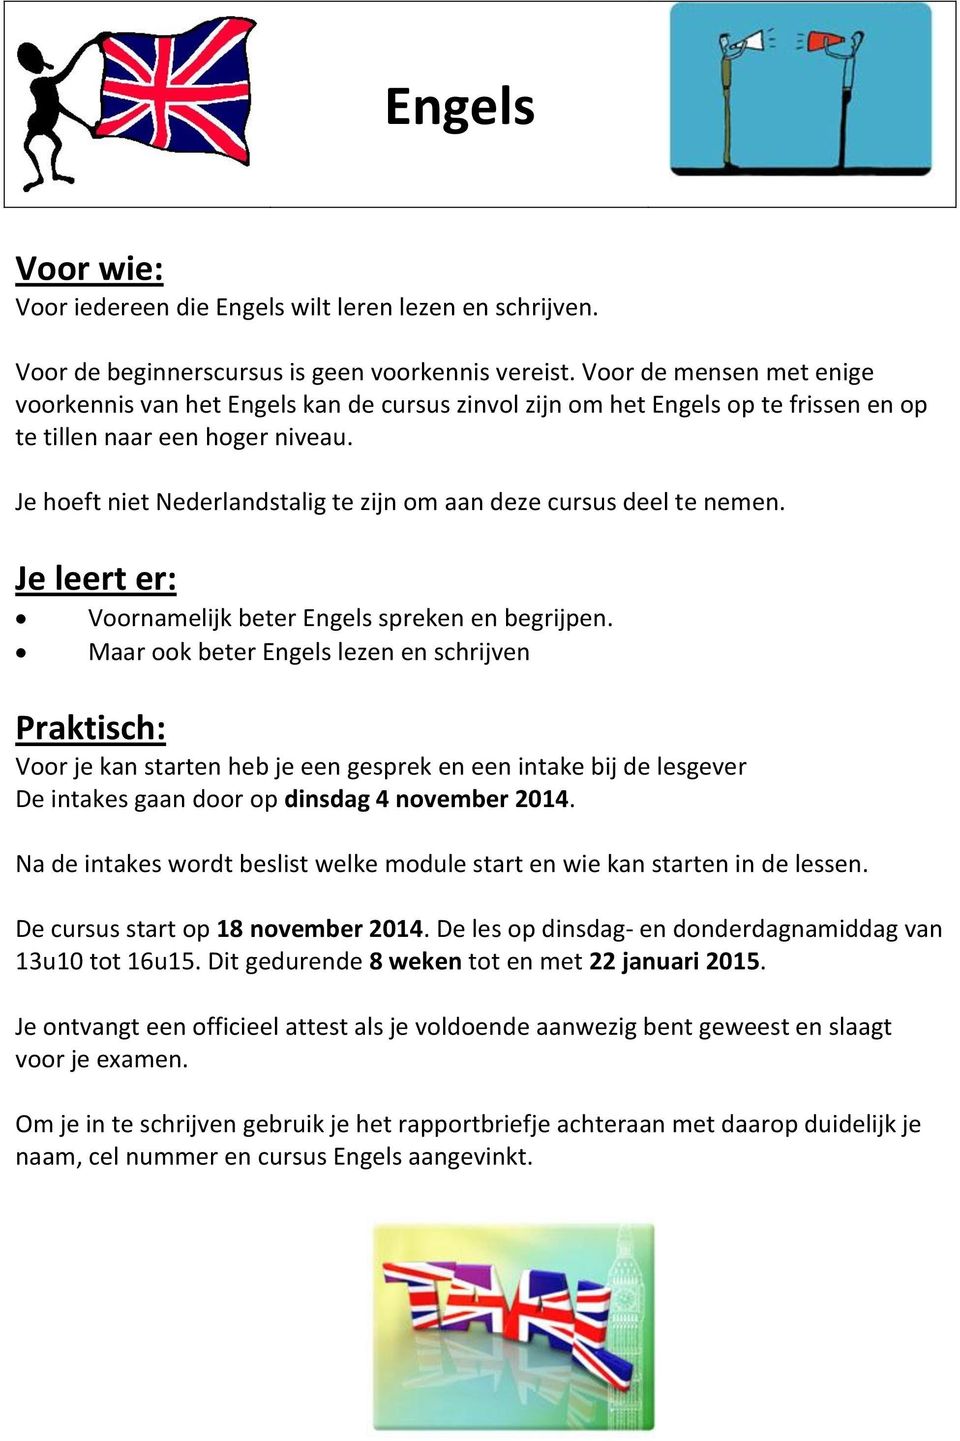 Je heft niet Nederlandstalig te zijn m aan deze cursus deel te nemen. Je leert er: Vrnamelijk beter Engels spreken en begrijpen.